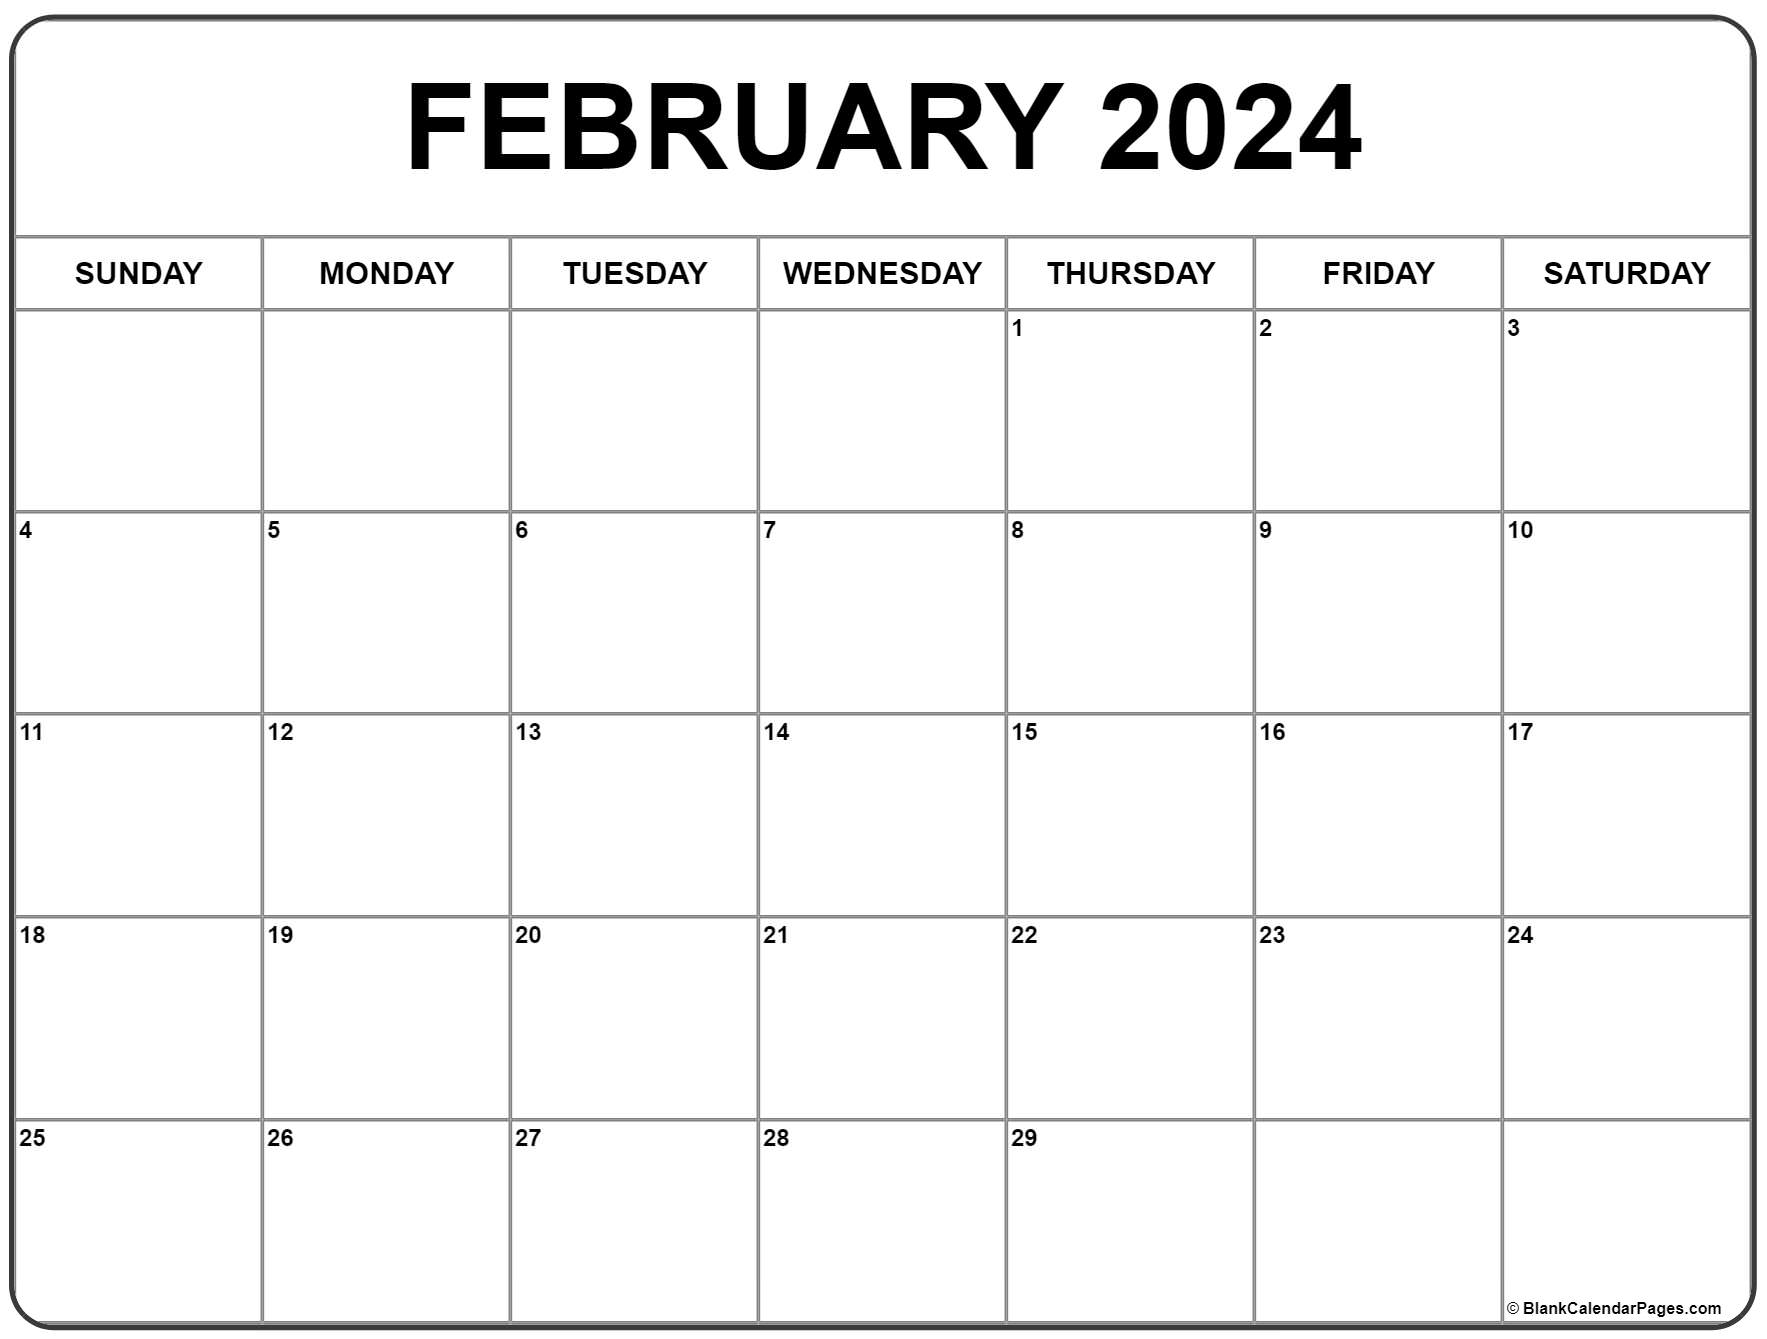 February 2024 Calendar | Free Printable Calendar for February Calendar Free Printable 2024